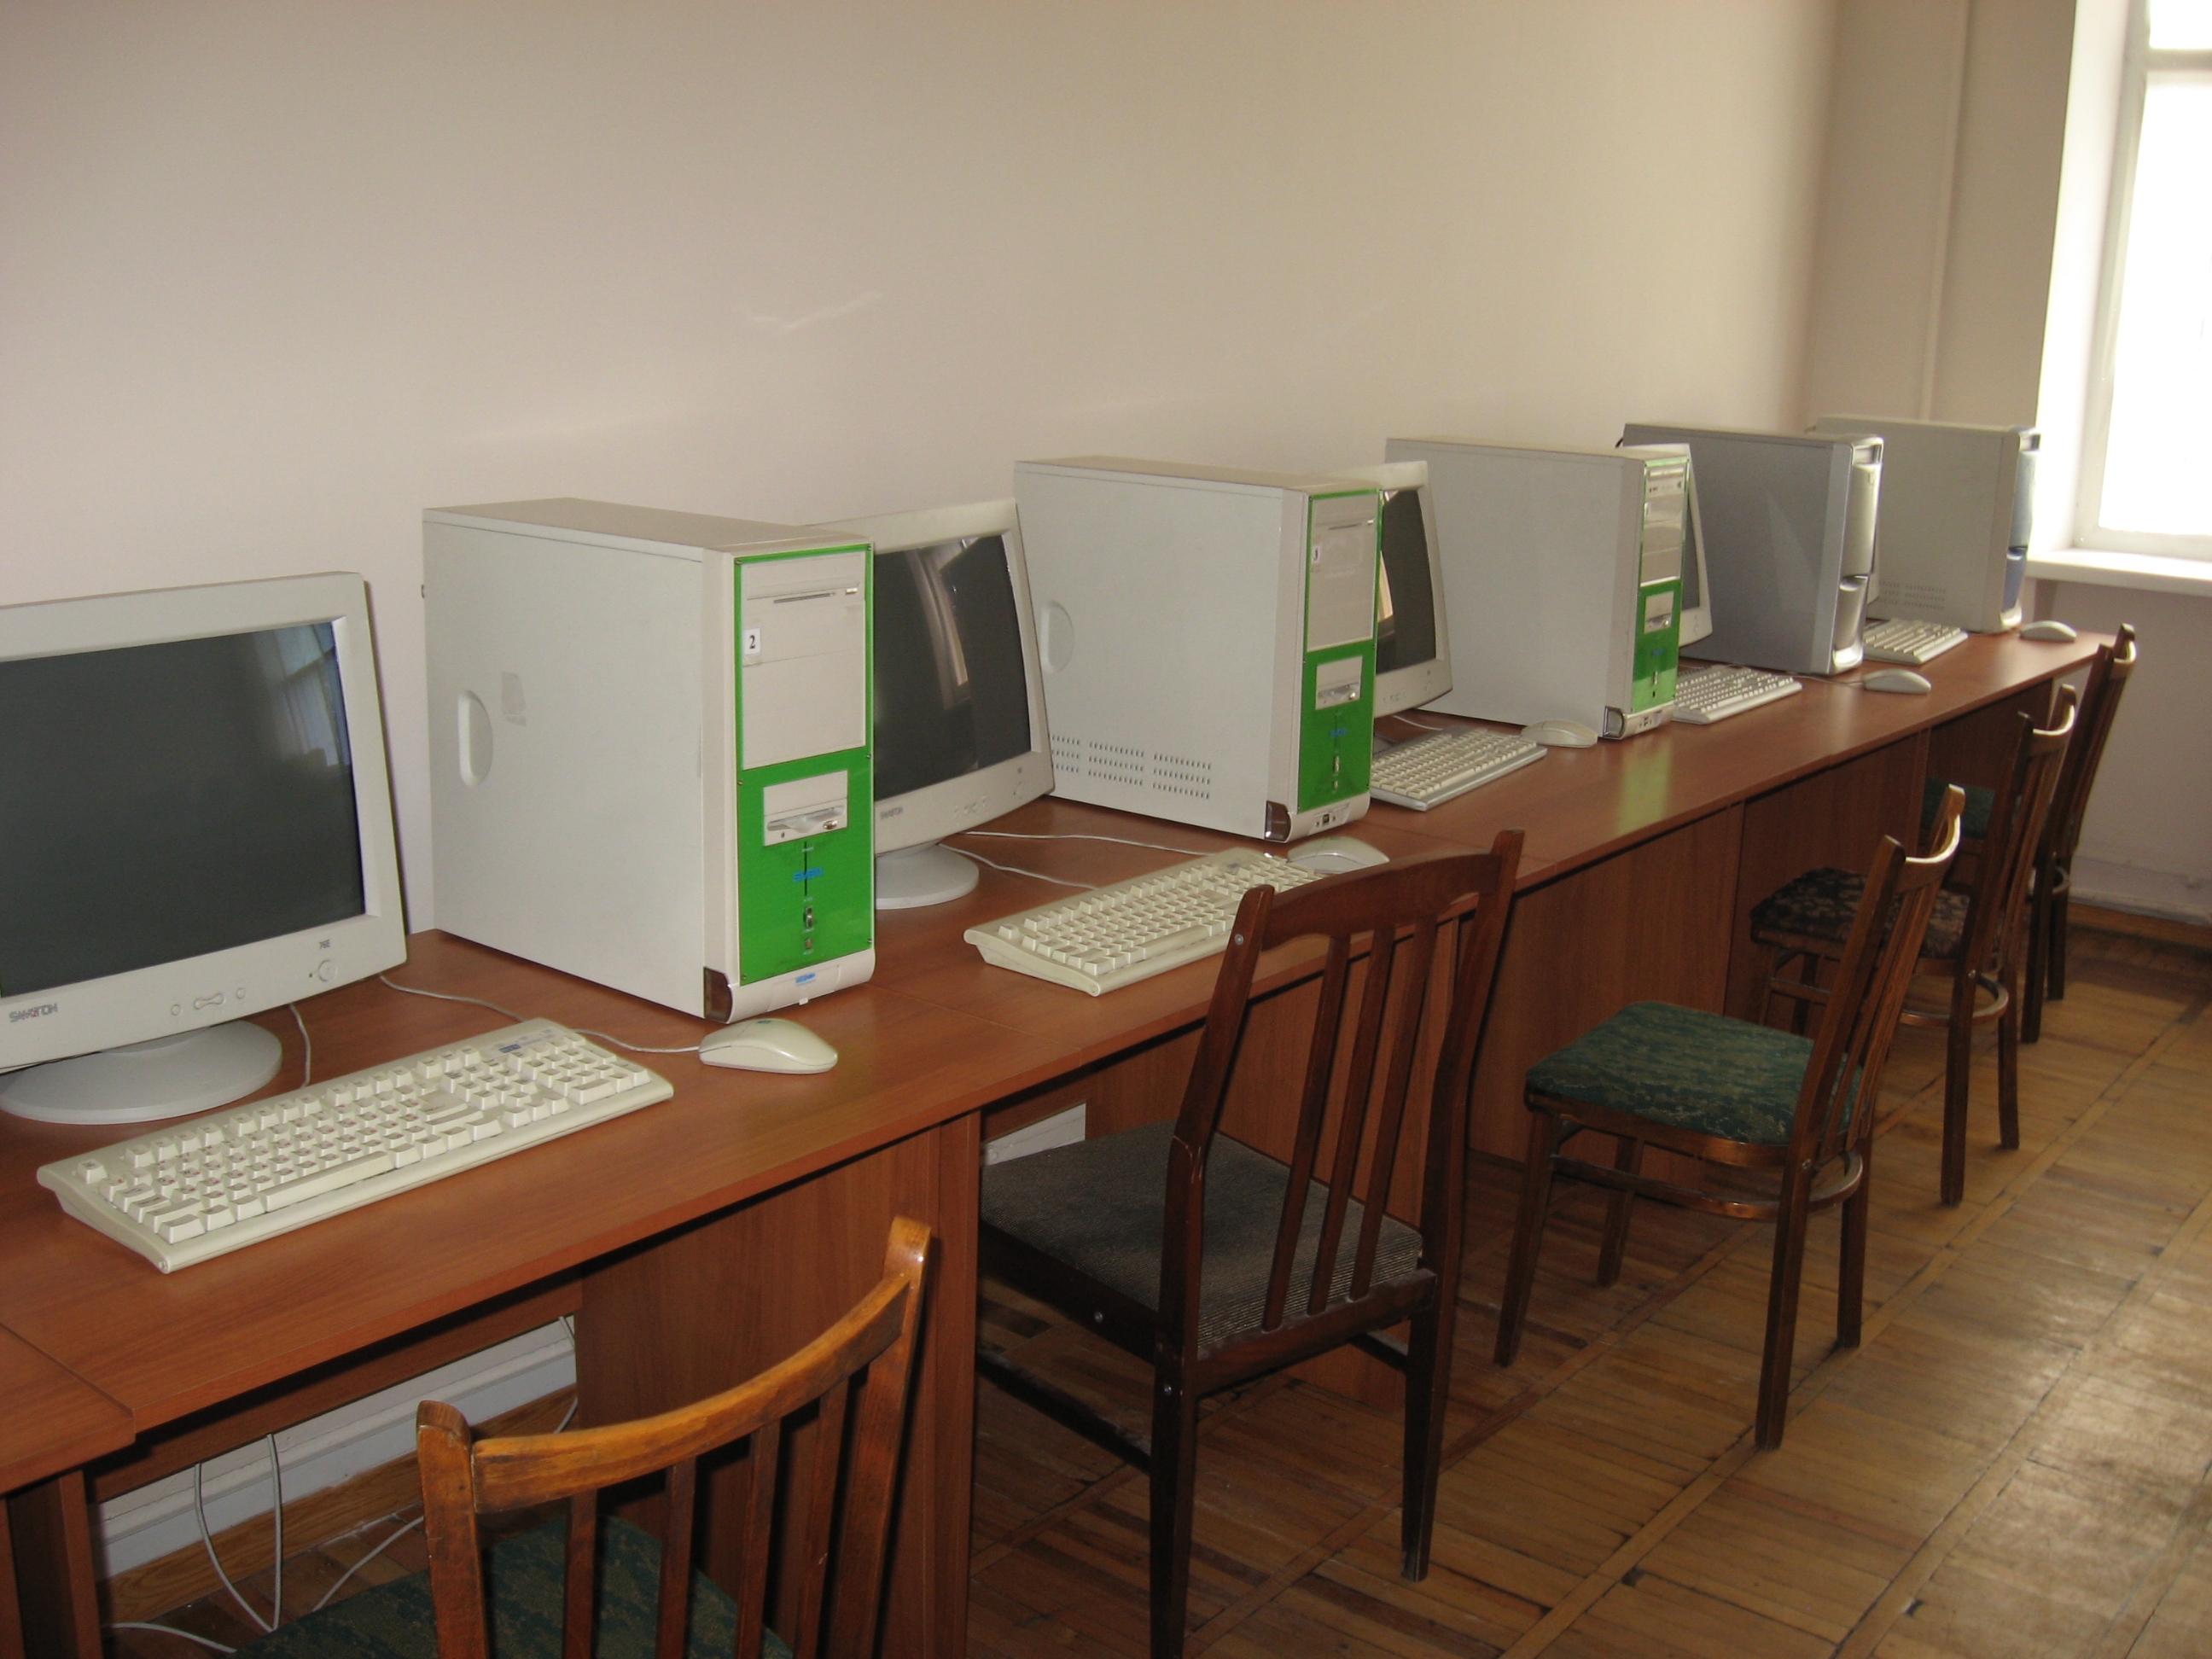 Информатика 30 лет. Старые компьютерные классы. Компьютерный класс старый. Старые компьютерные классы в школе. Кабинет информатики.